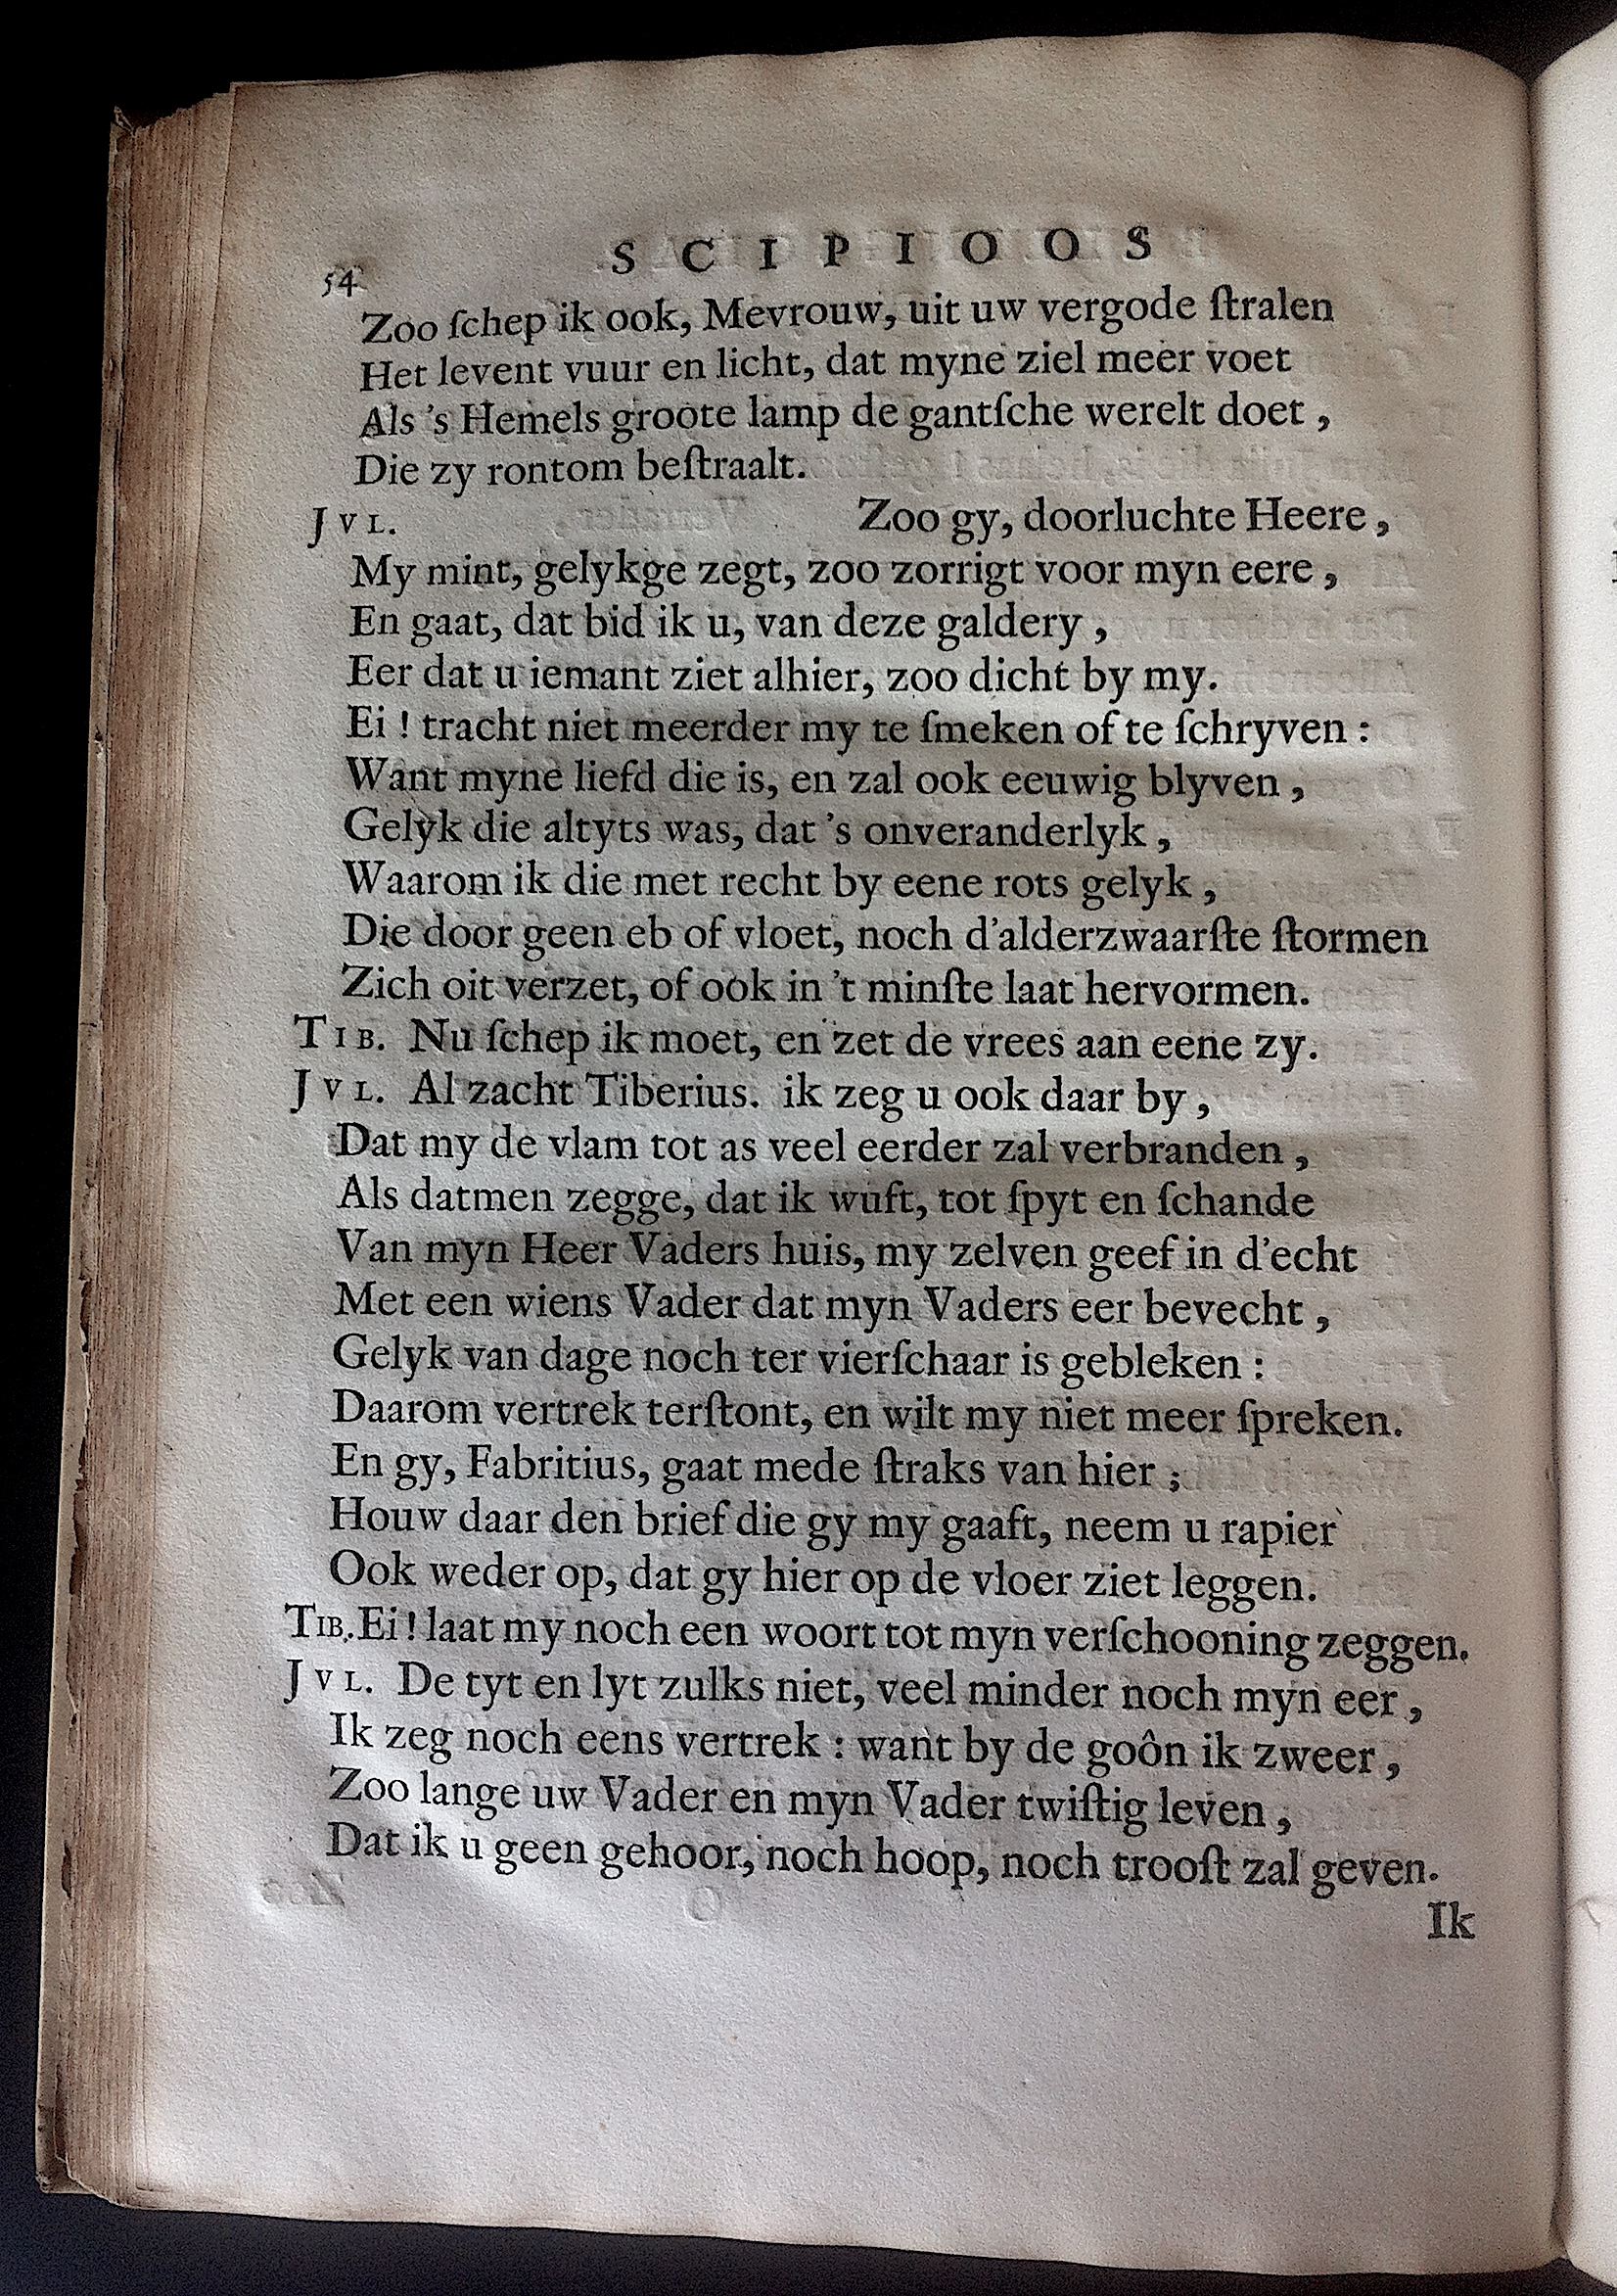 BoccardScipioFolio1658p54